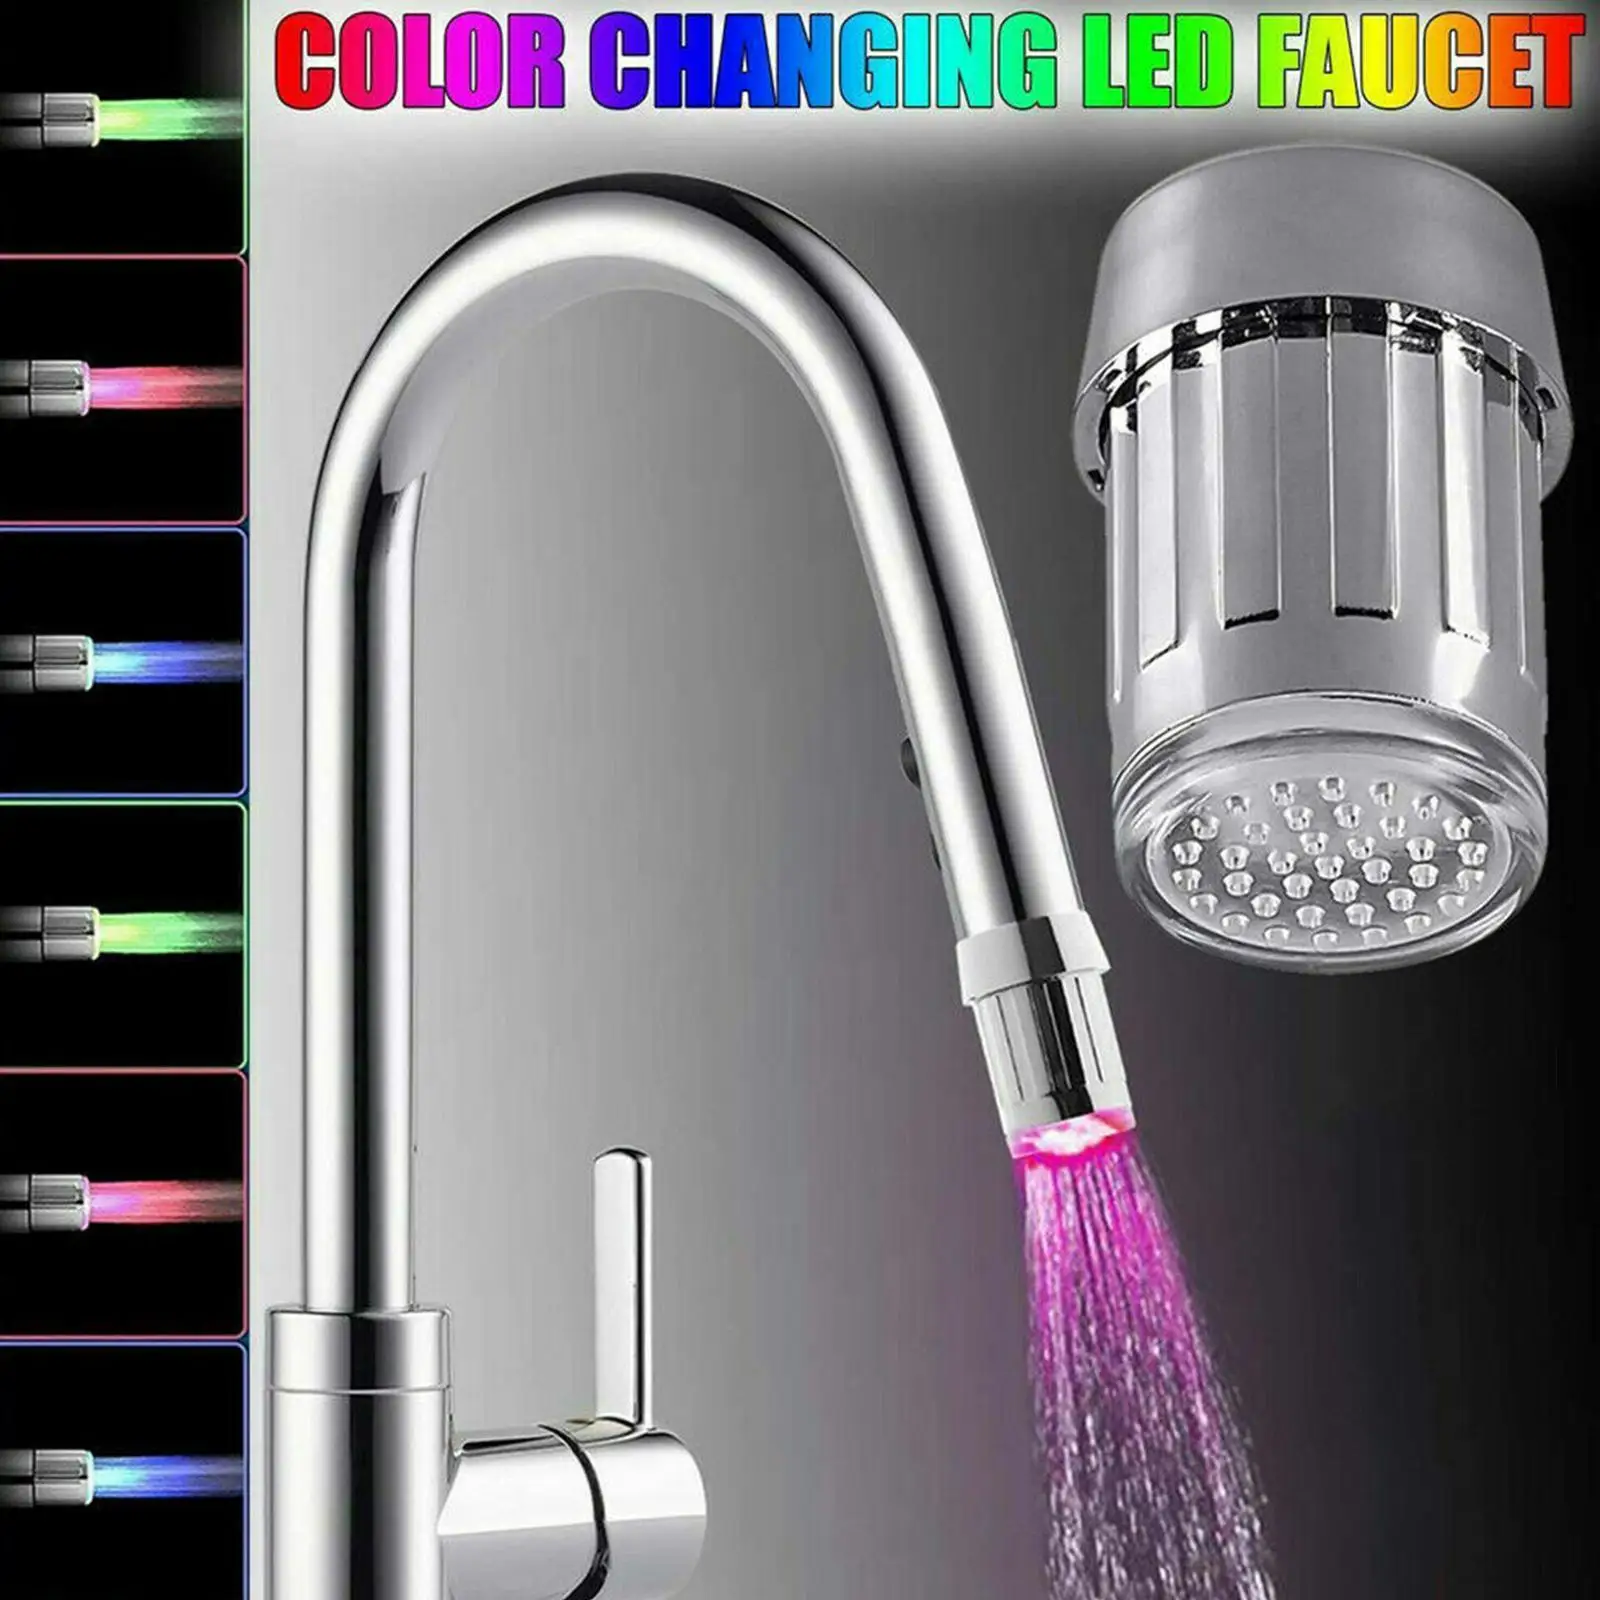 

Светодиодный смеситель для воды с потосветильник кой, насадка на кран для кухни и ванной, трехцветный, с контролируемой температурой, D7s0, 7 ц...